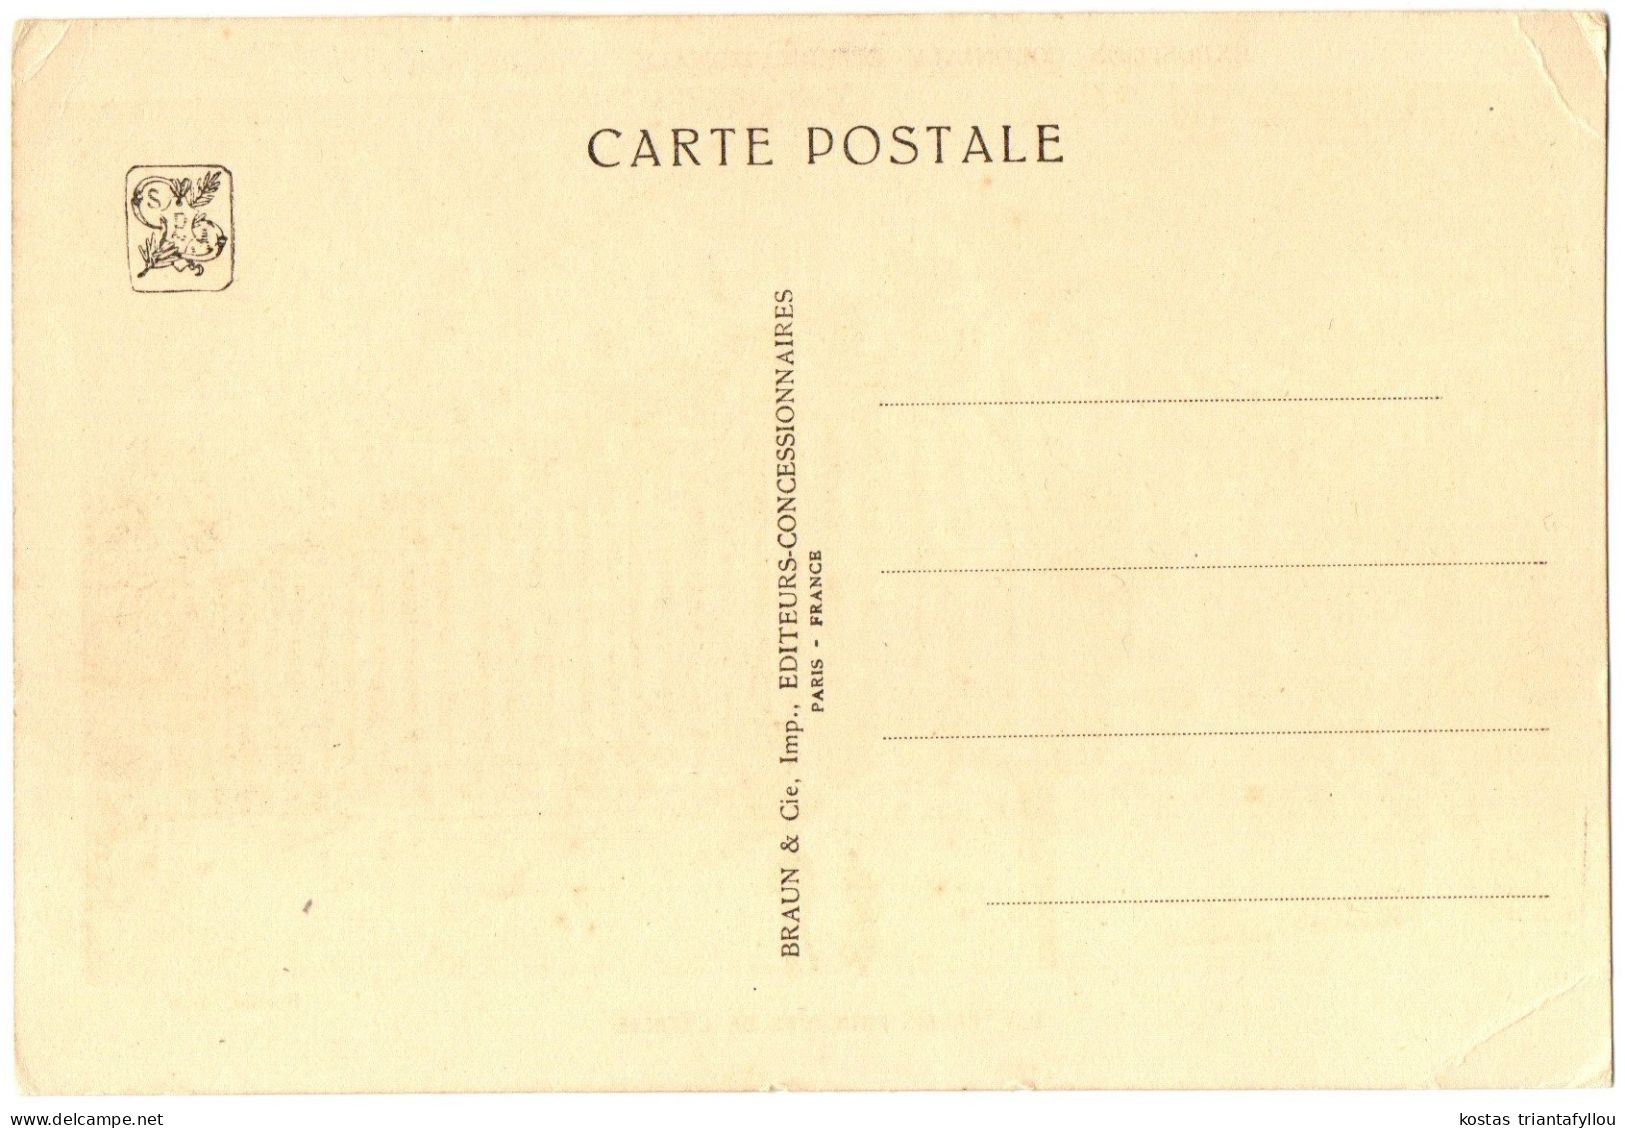 1.8.2 FRANCE, PARIS, EXPOSITION COLONIALE INTERNATIONALE, PAVILLON DE LA PALESTINE, 1931, POSTCARD - Exposiciones